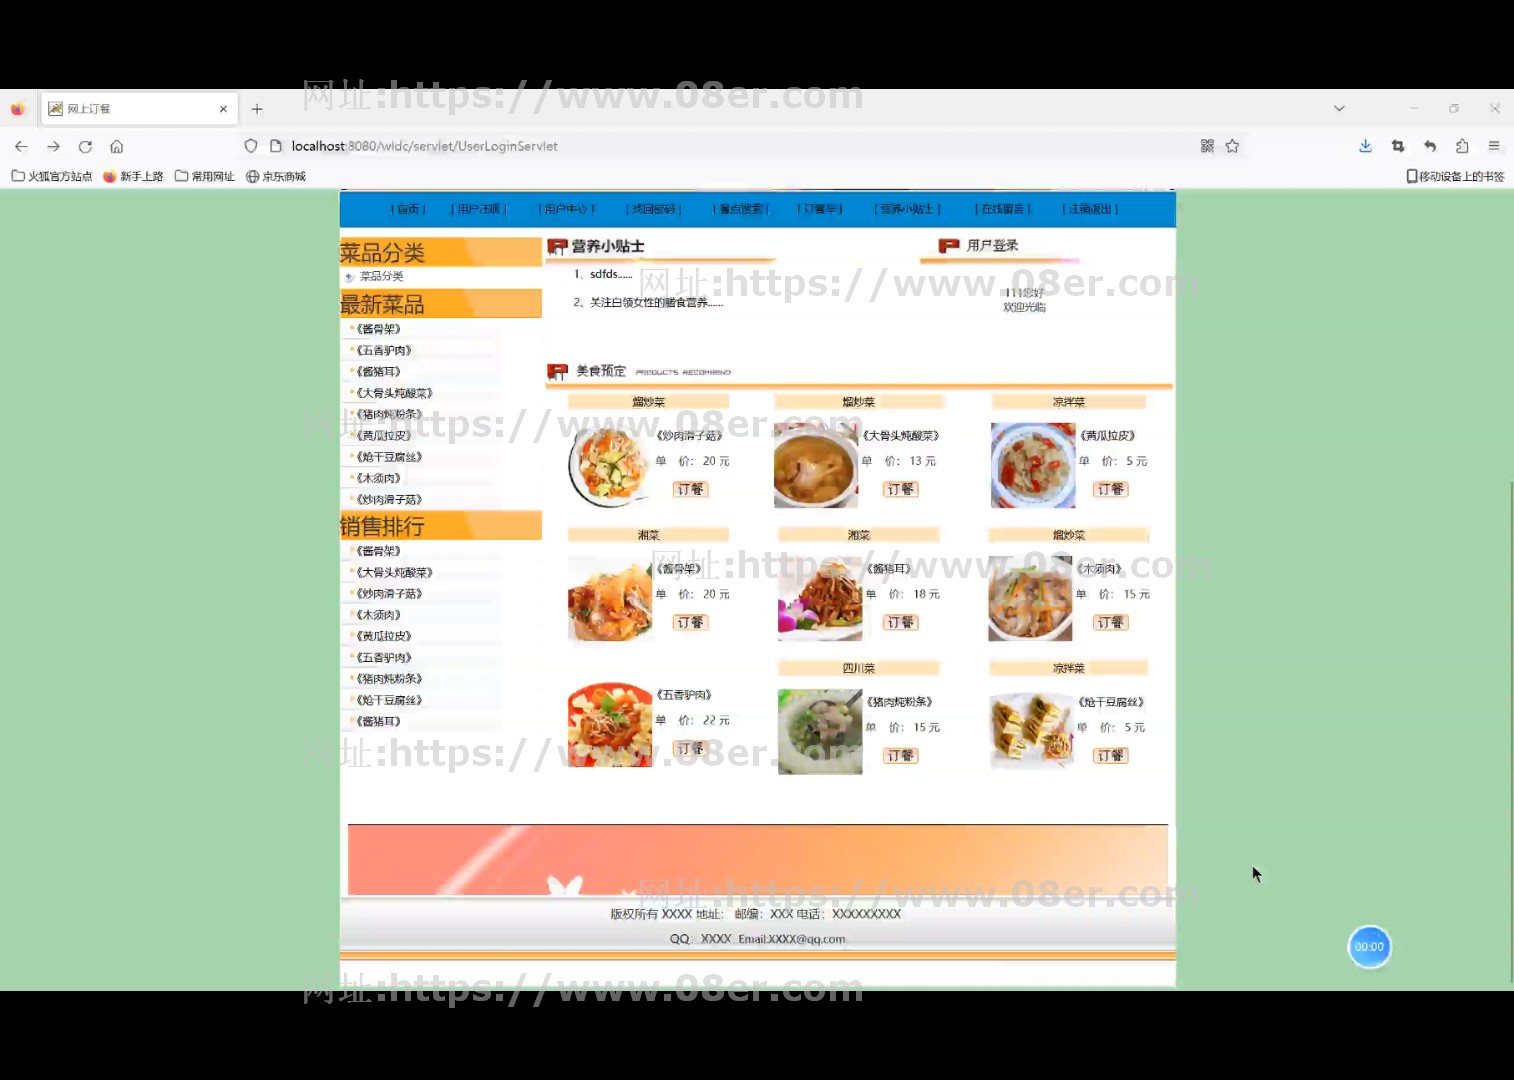 jsp javaweb点餐管理系统 在线订餐 网上订餐美食系统源代码程序~js10043